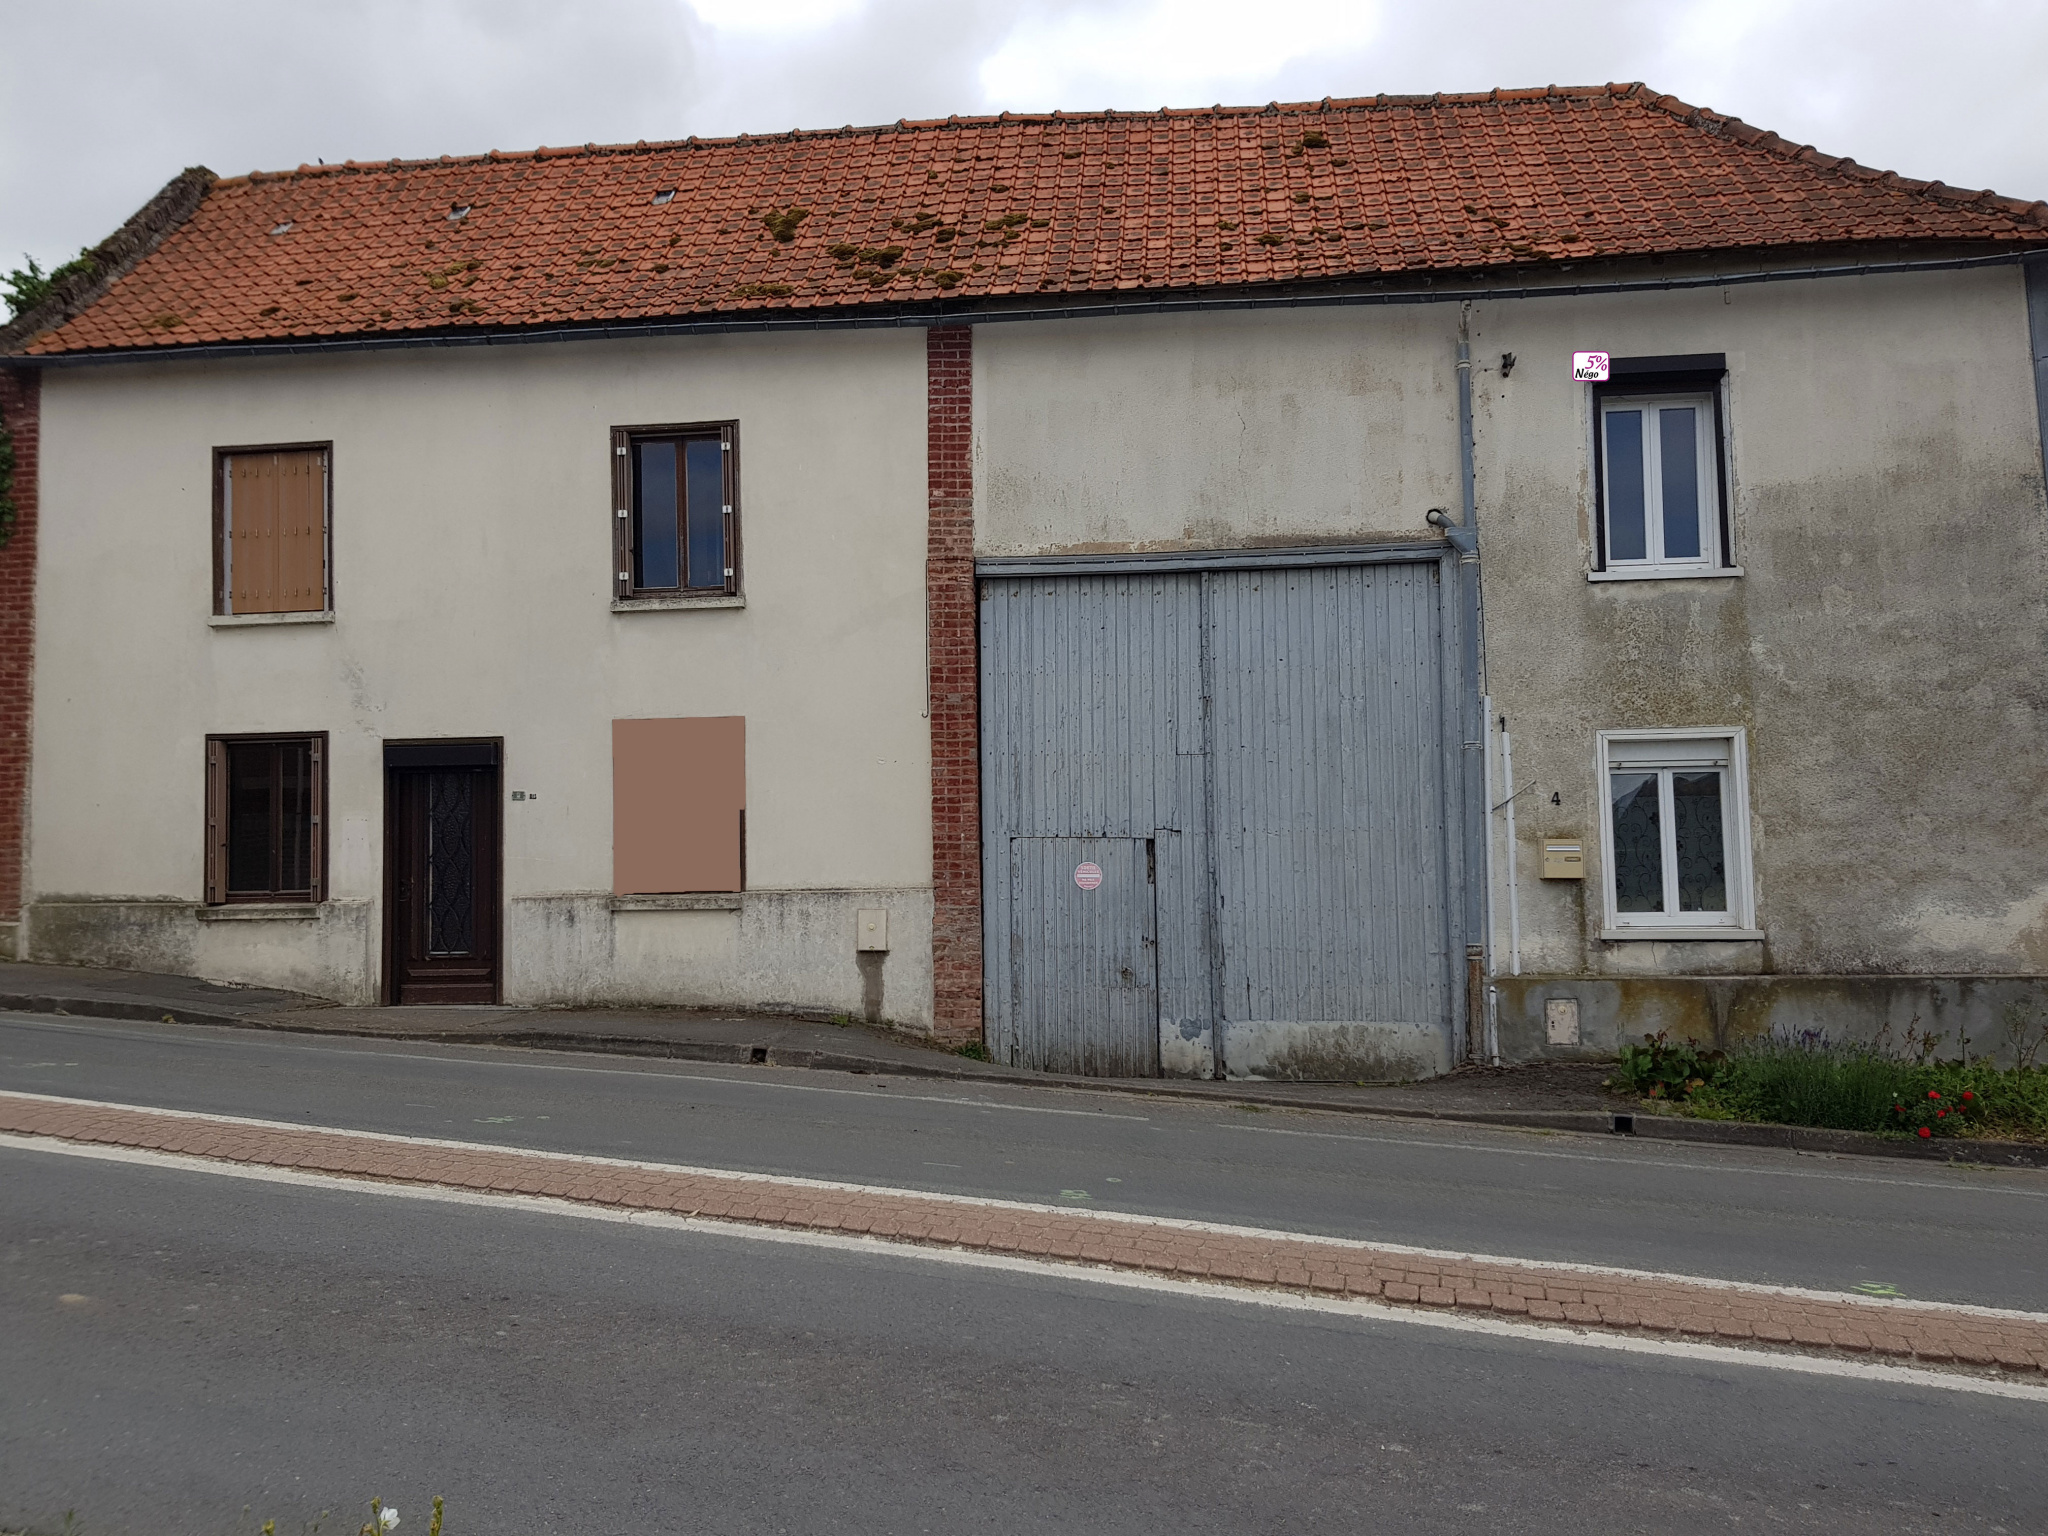 Immo80 – L'immobilier à Amiens et dans la Somme-ACHAT / VENTE Vente de deux maisons sur la même parcelle